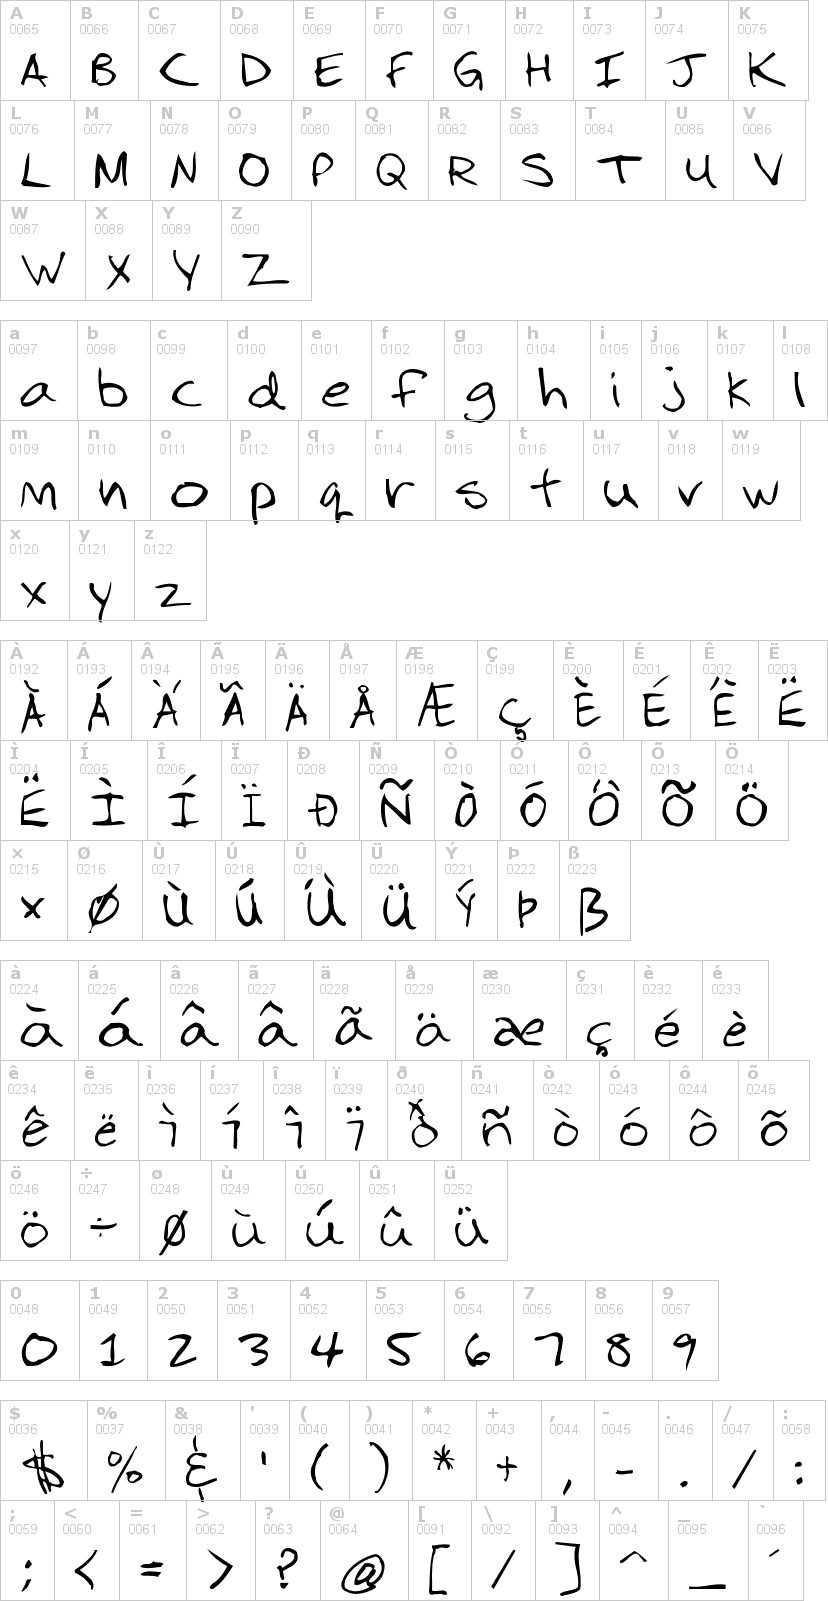 Lettere dell'alfabeto del font 3dumb-2dumb con le quali è possibile realizzare adesivi prespaziati